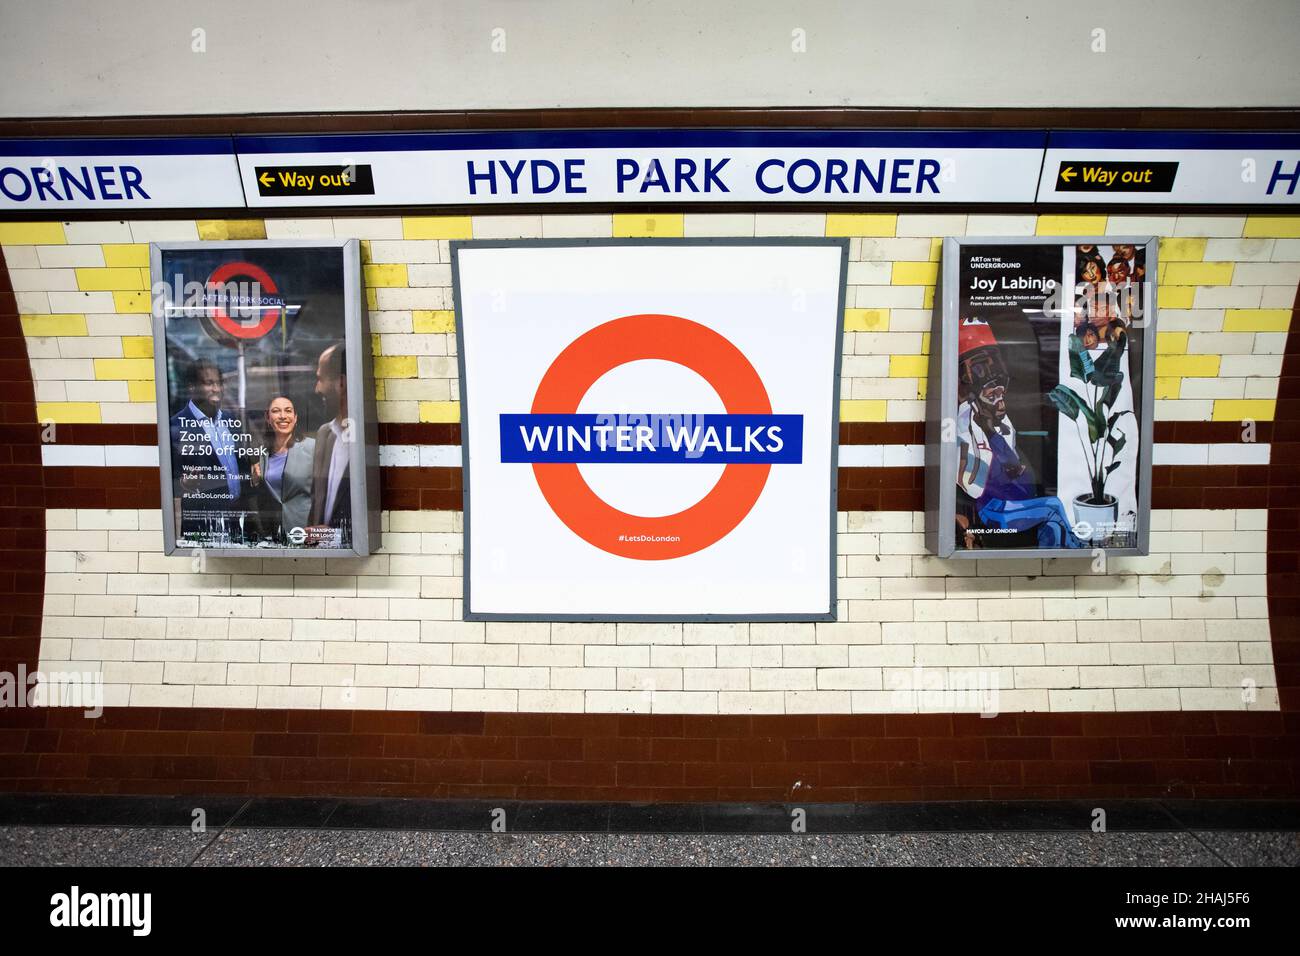 Un Roundel spécial « Winter Walks » monte à la gare de Hyde Park Corner. Banque D'Images